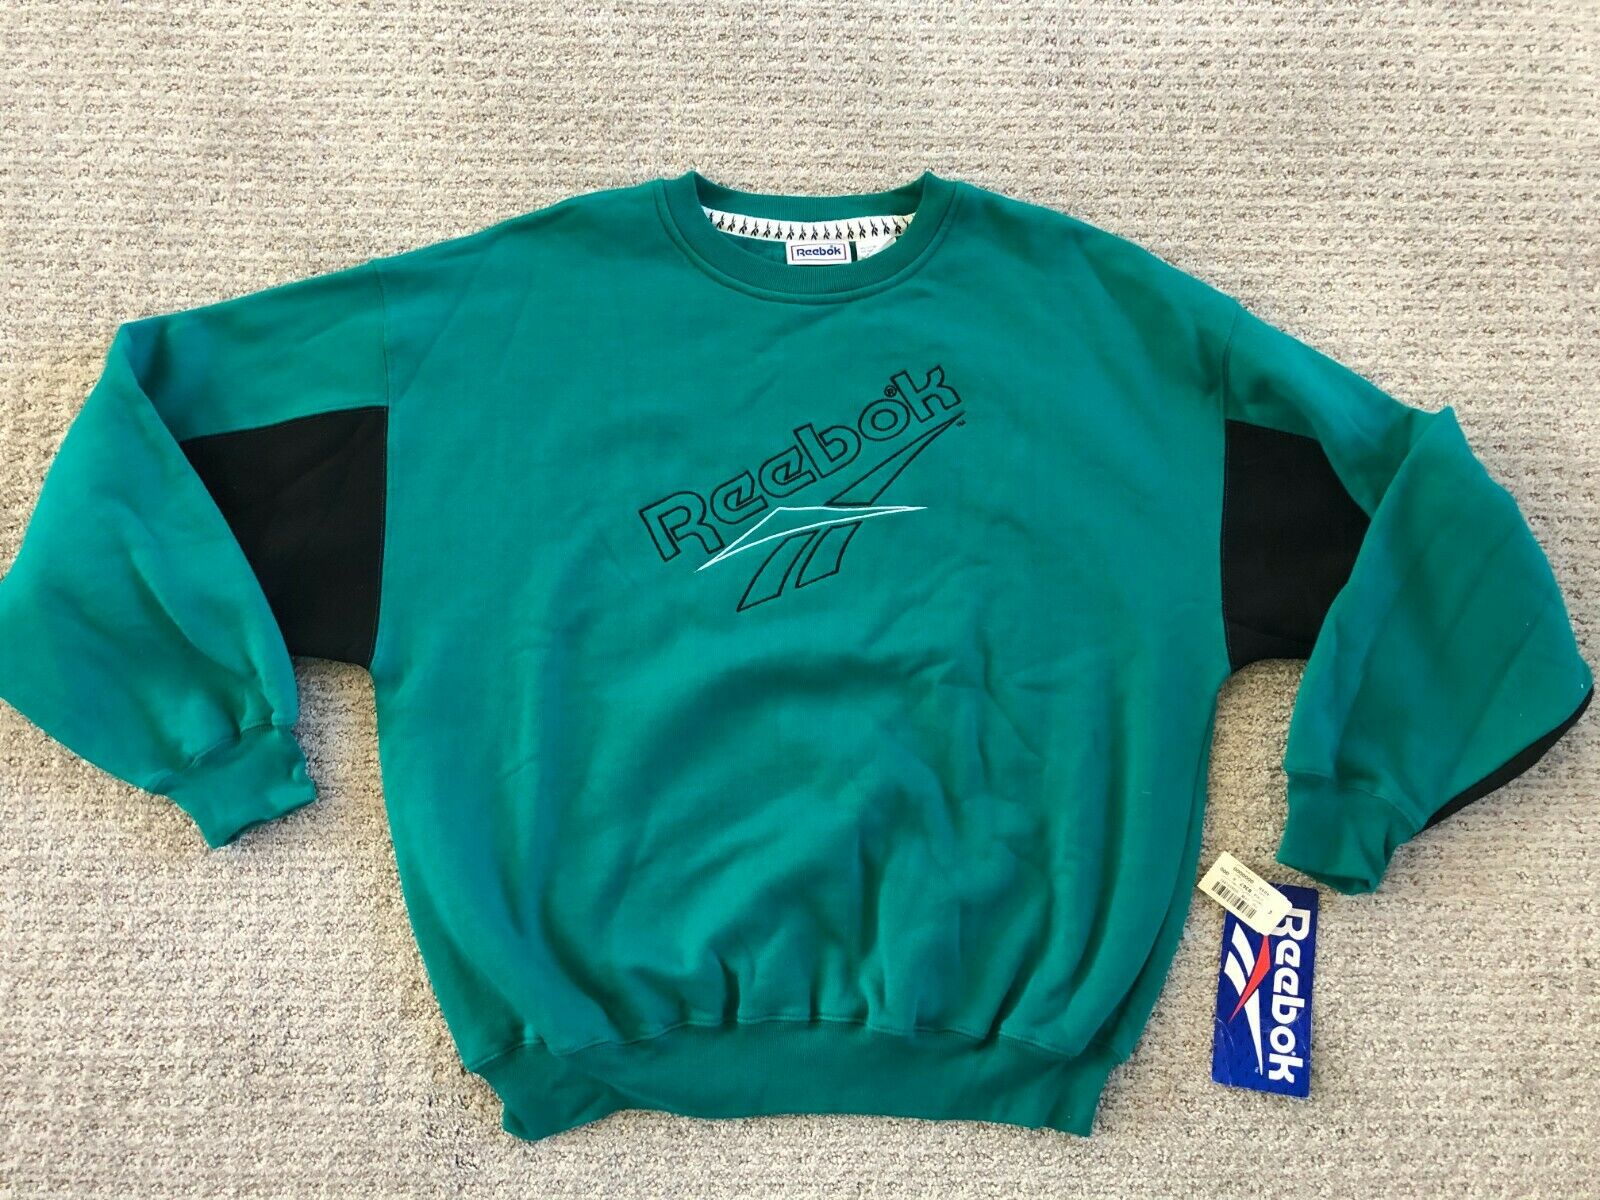 True Vintage 80's Reebok Men's Sweatshirt Medium New W Tags Black Teal Sweet!